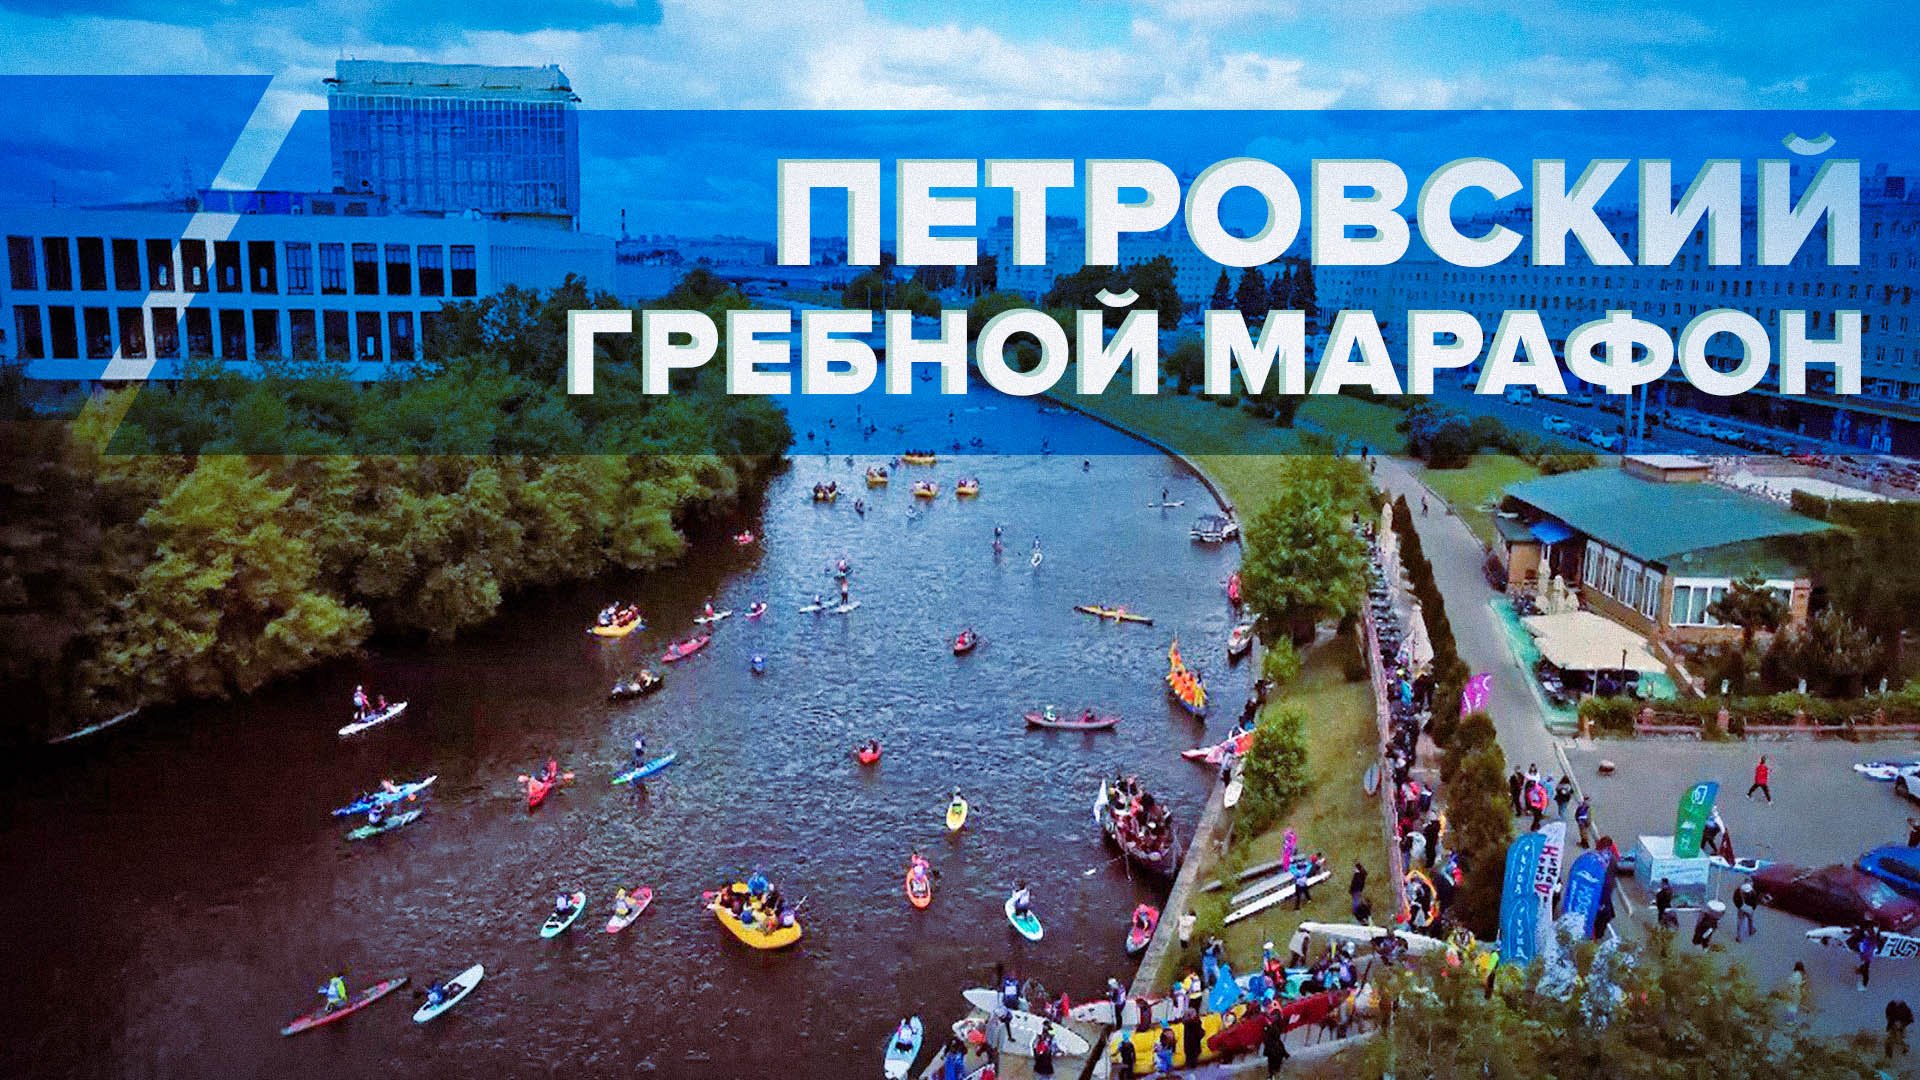 Более 4 тыс. участников: В Санкт-Петербурге прошёл ежегодный Петровский гребной марафон